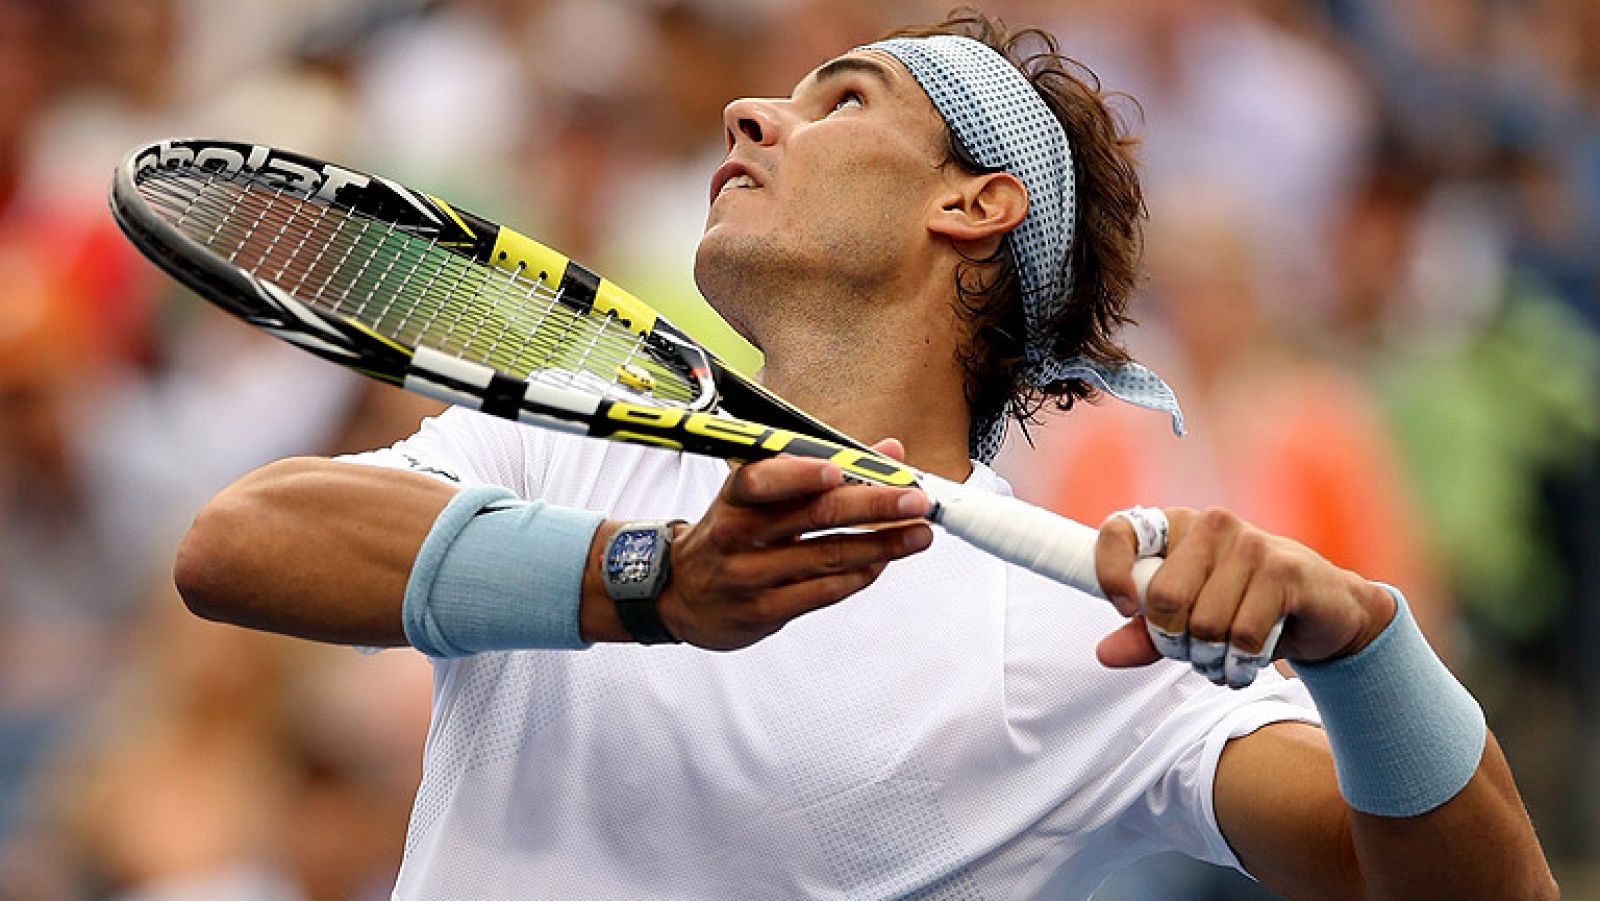 Después de dos encuentros en la final del US Open y con una victoria para cada uno, Nadal y Djokovic se juegan de nuevo el trono del torneo estadounidense, el último 'Grand Slam' de la temporada.